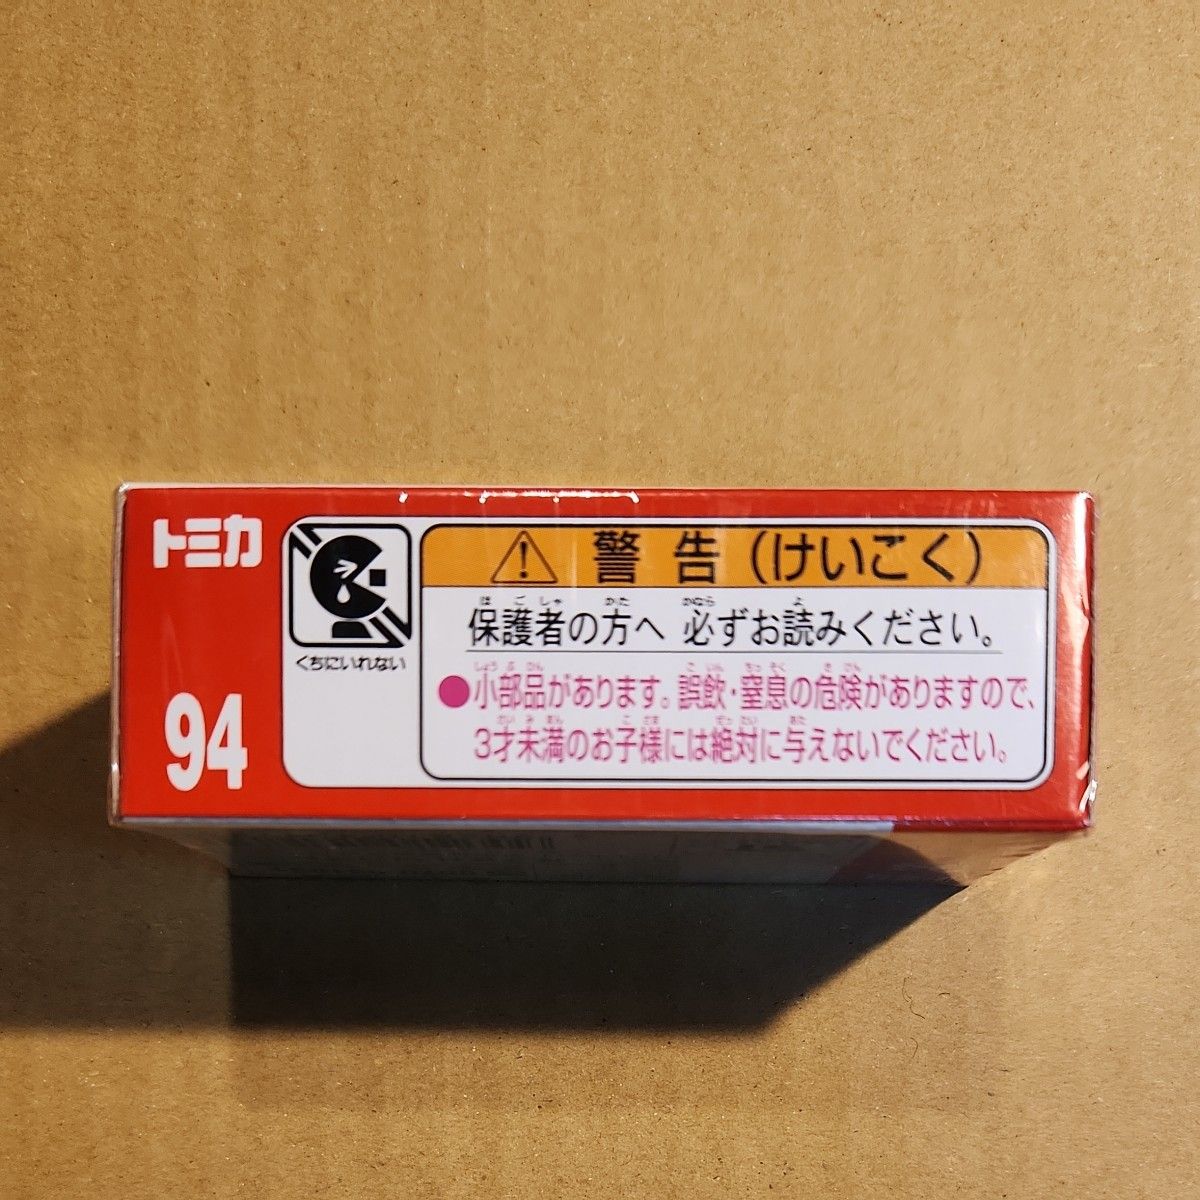 No.94 トヨタ C-HR （廃盤） （1/60スケール トミカ 101734）